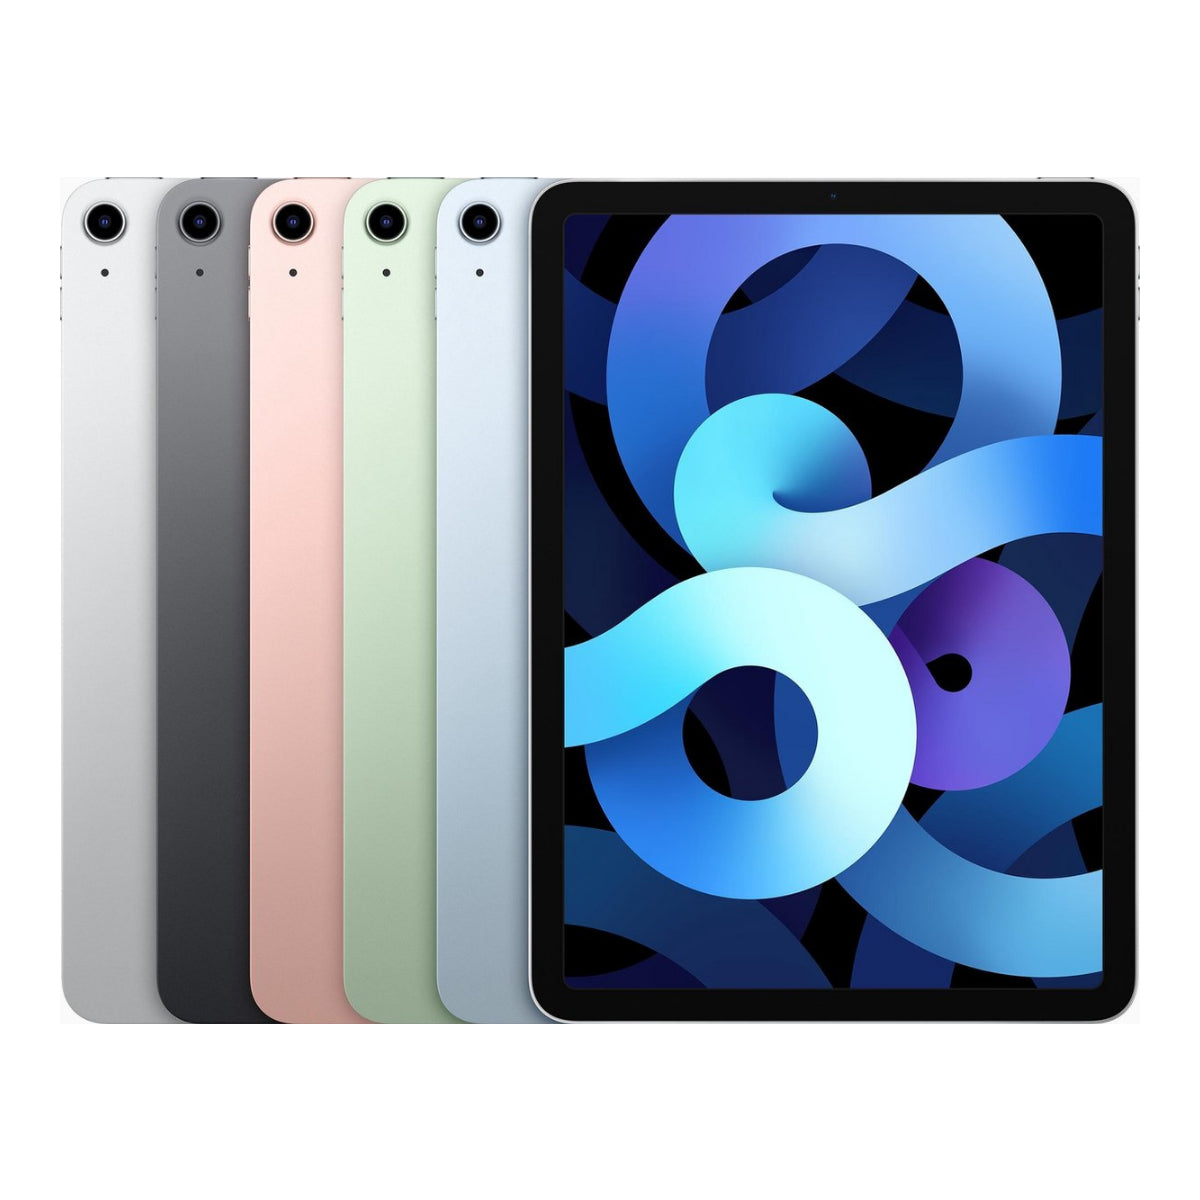 iPad Air 4 wifi 64gb - test-product-media-liquid1